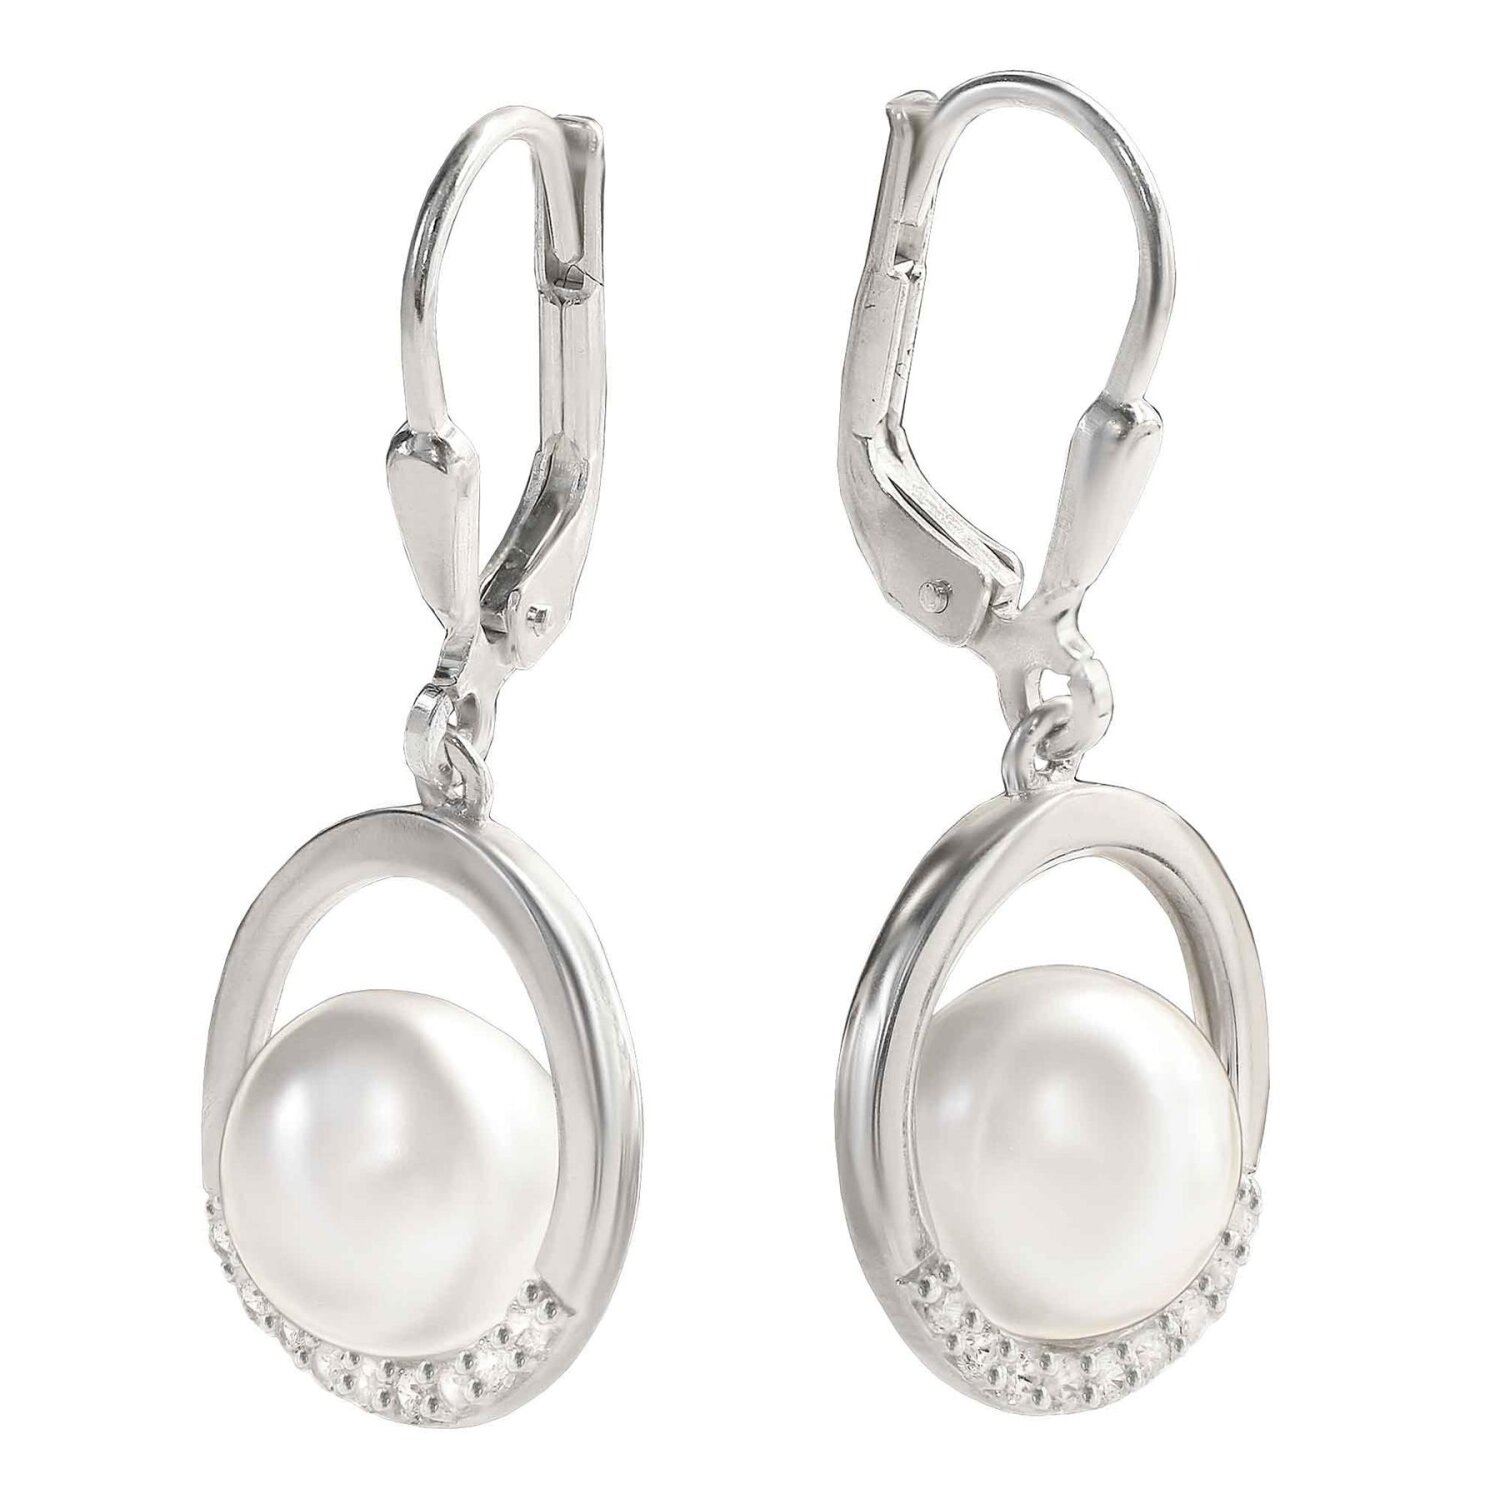 Silberne Perlenohrringe 28 mm mit weißer Perle  elegant auf Silberring Echt Silber 925